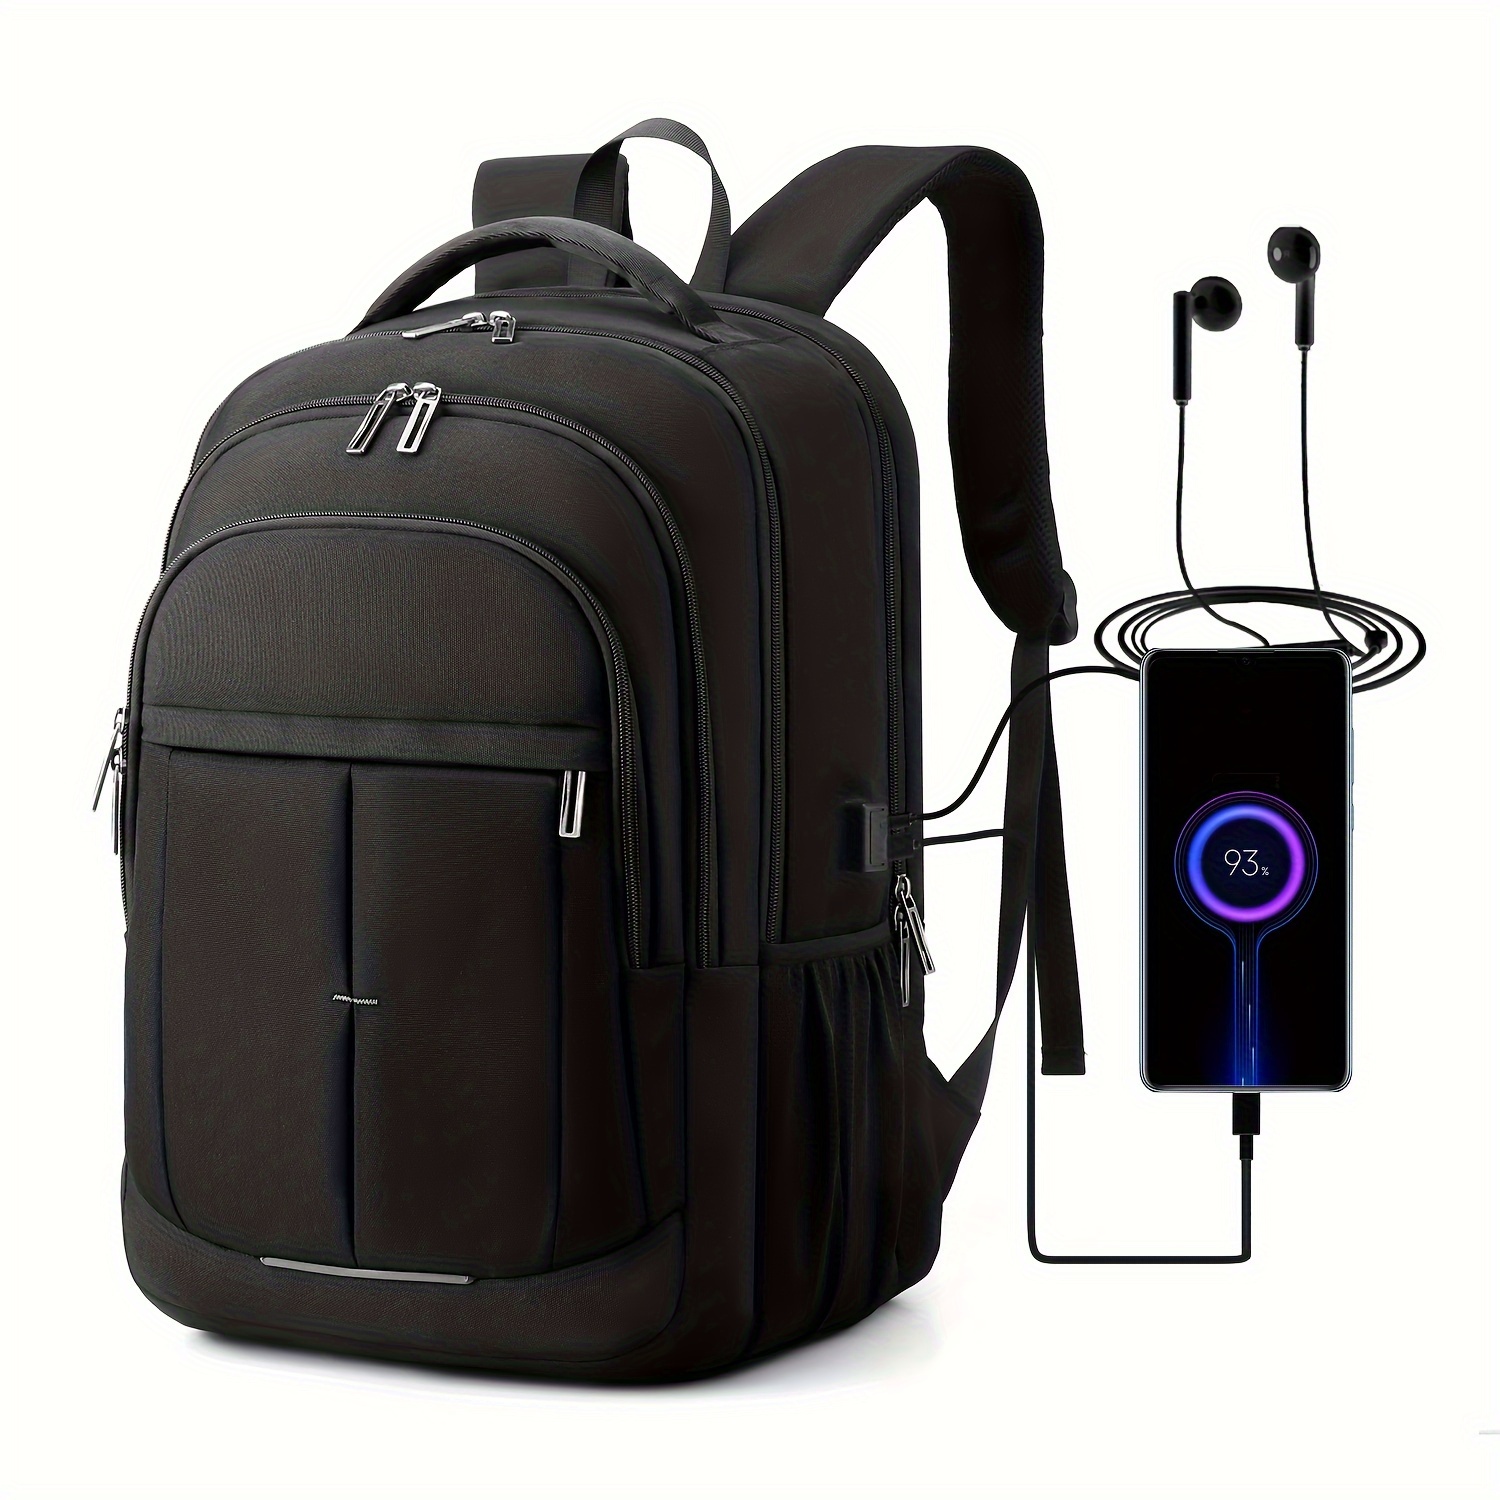 Nordace Siena - Mochila para laptop de 15.6 pulgadas para hombres y mujeres  con puerto de carga USB, impermeable, diario, viajes, trabajo, escuela